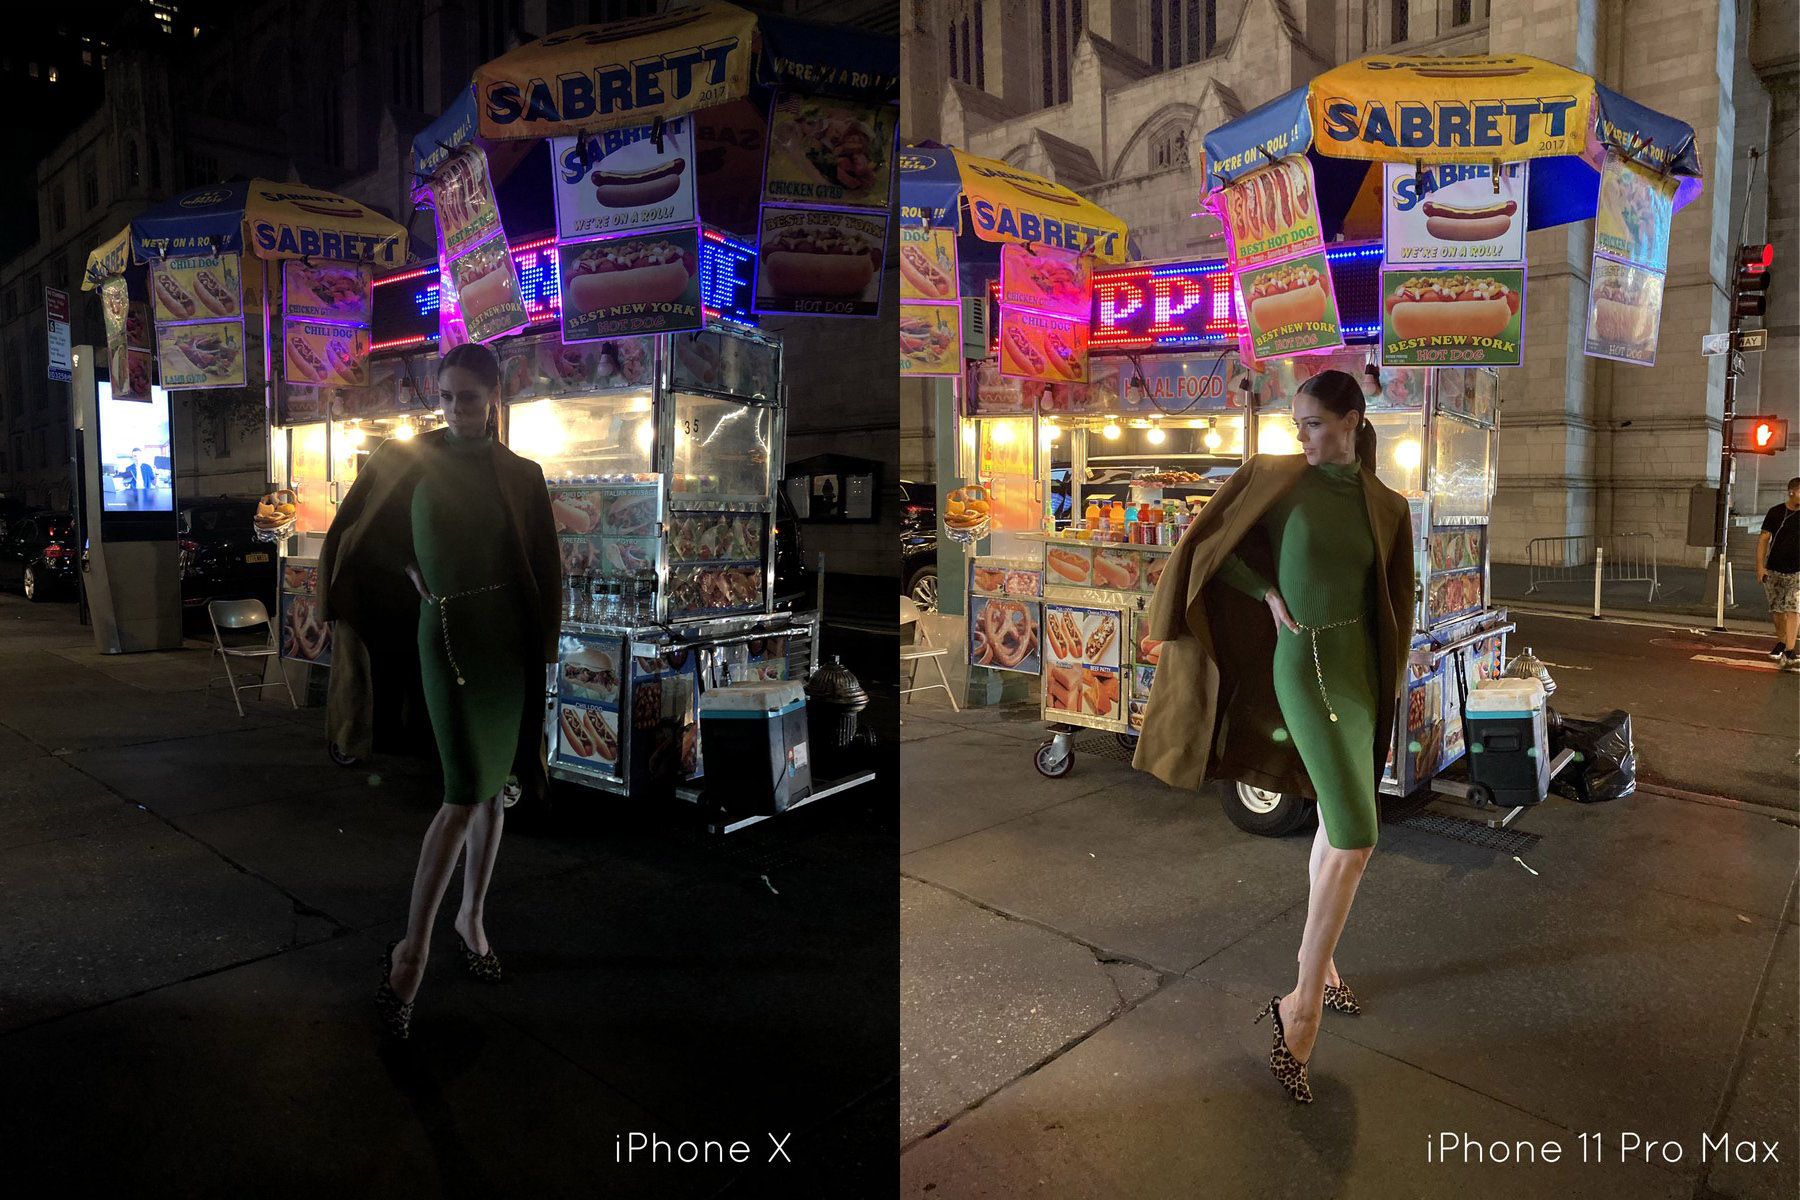 La imagen real del modo Noche del iPhone no defrauda